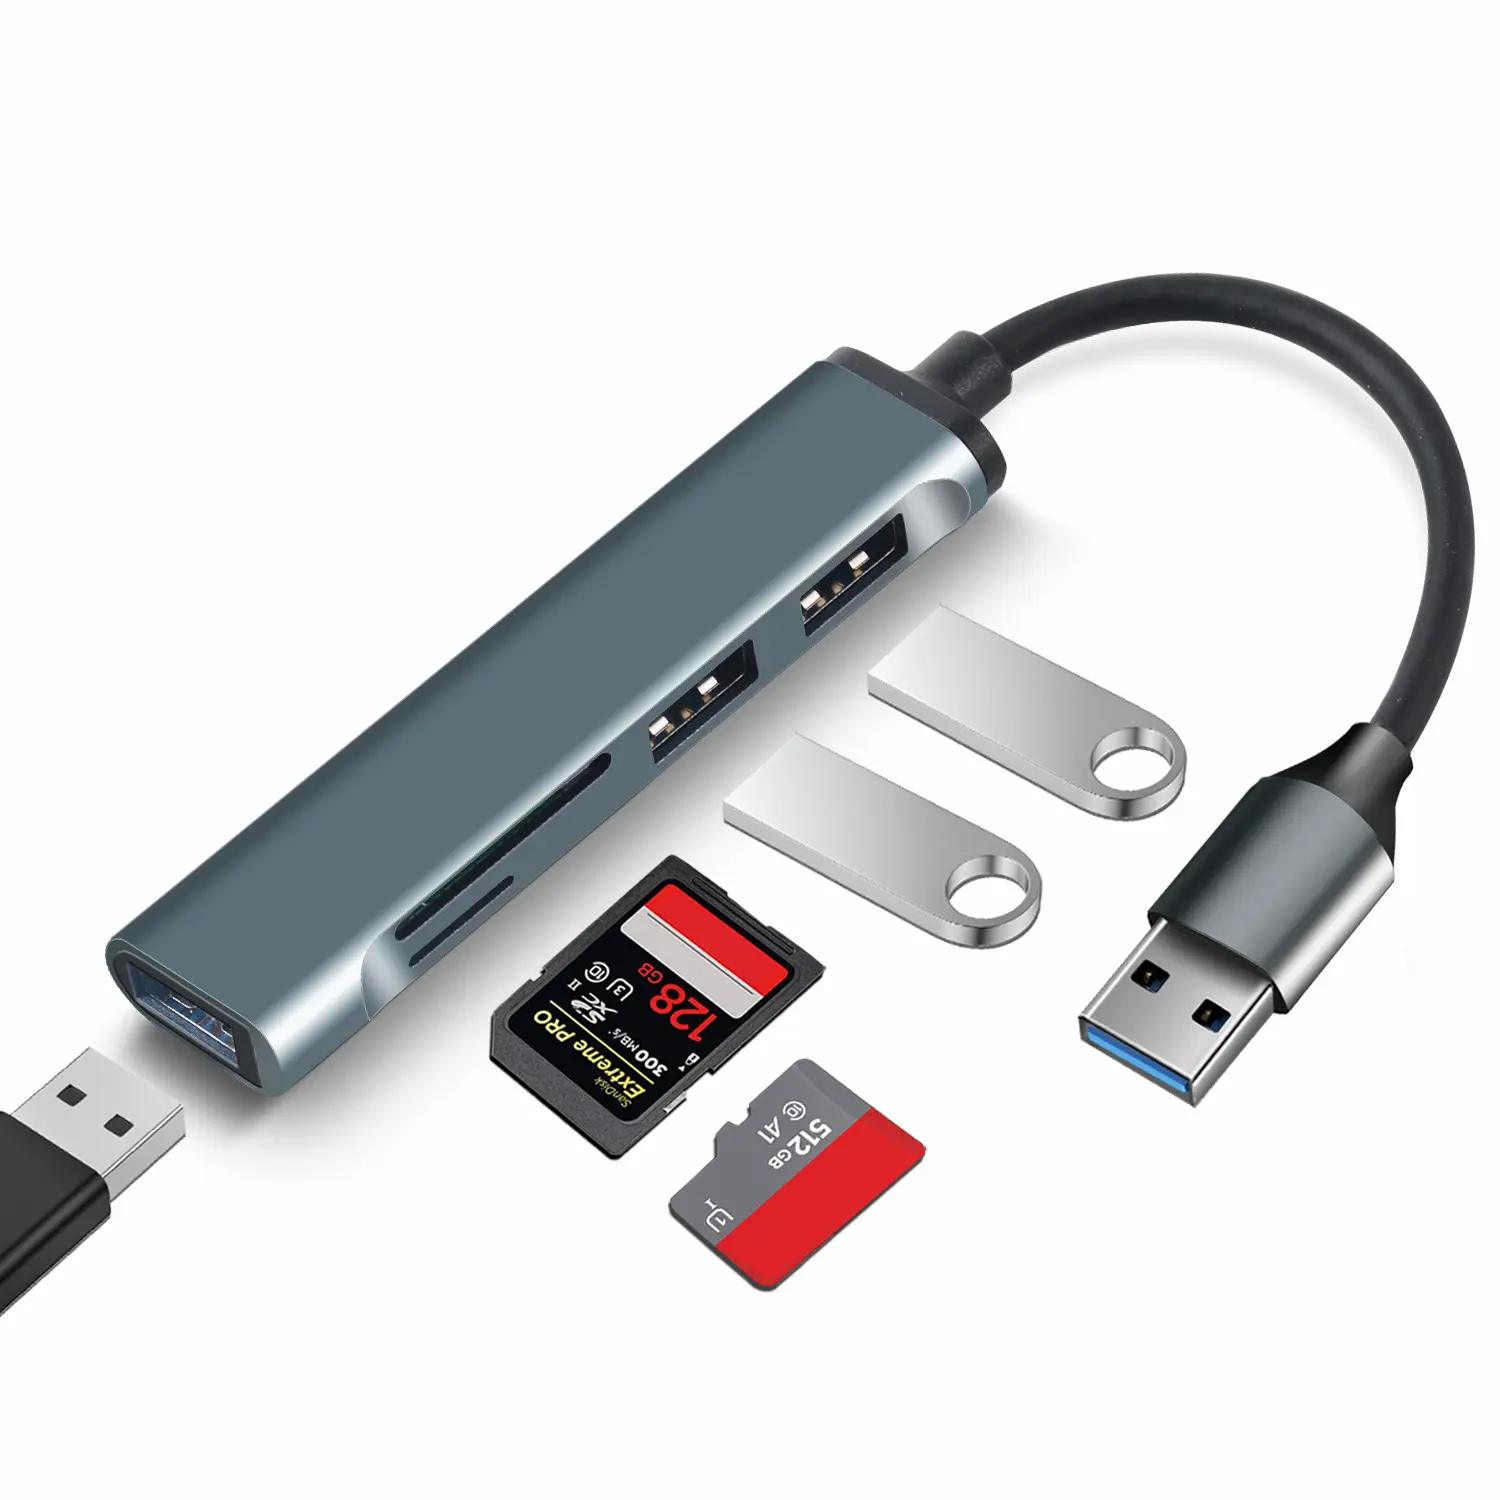 5 In 1 USB 3.0 허브 유형 C에 USB 5 포트 멀티 분배기 어댑터 OTG USB 허브 PC 컴퓨터 액세서리